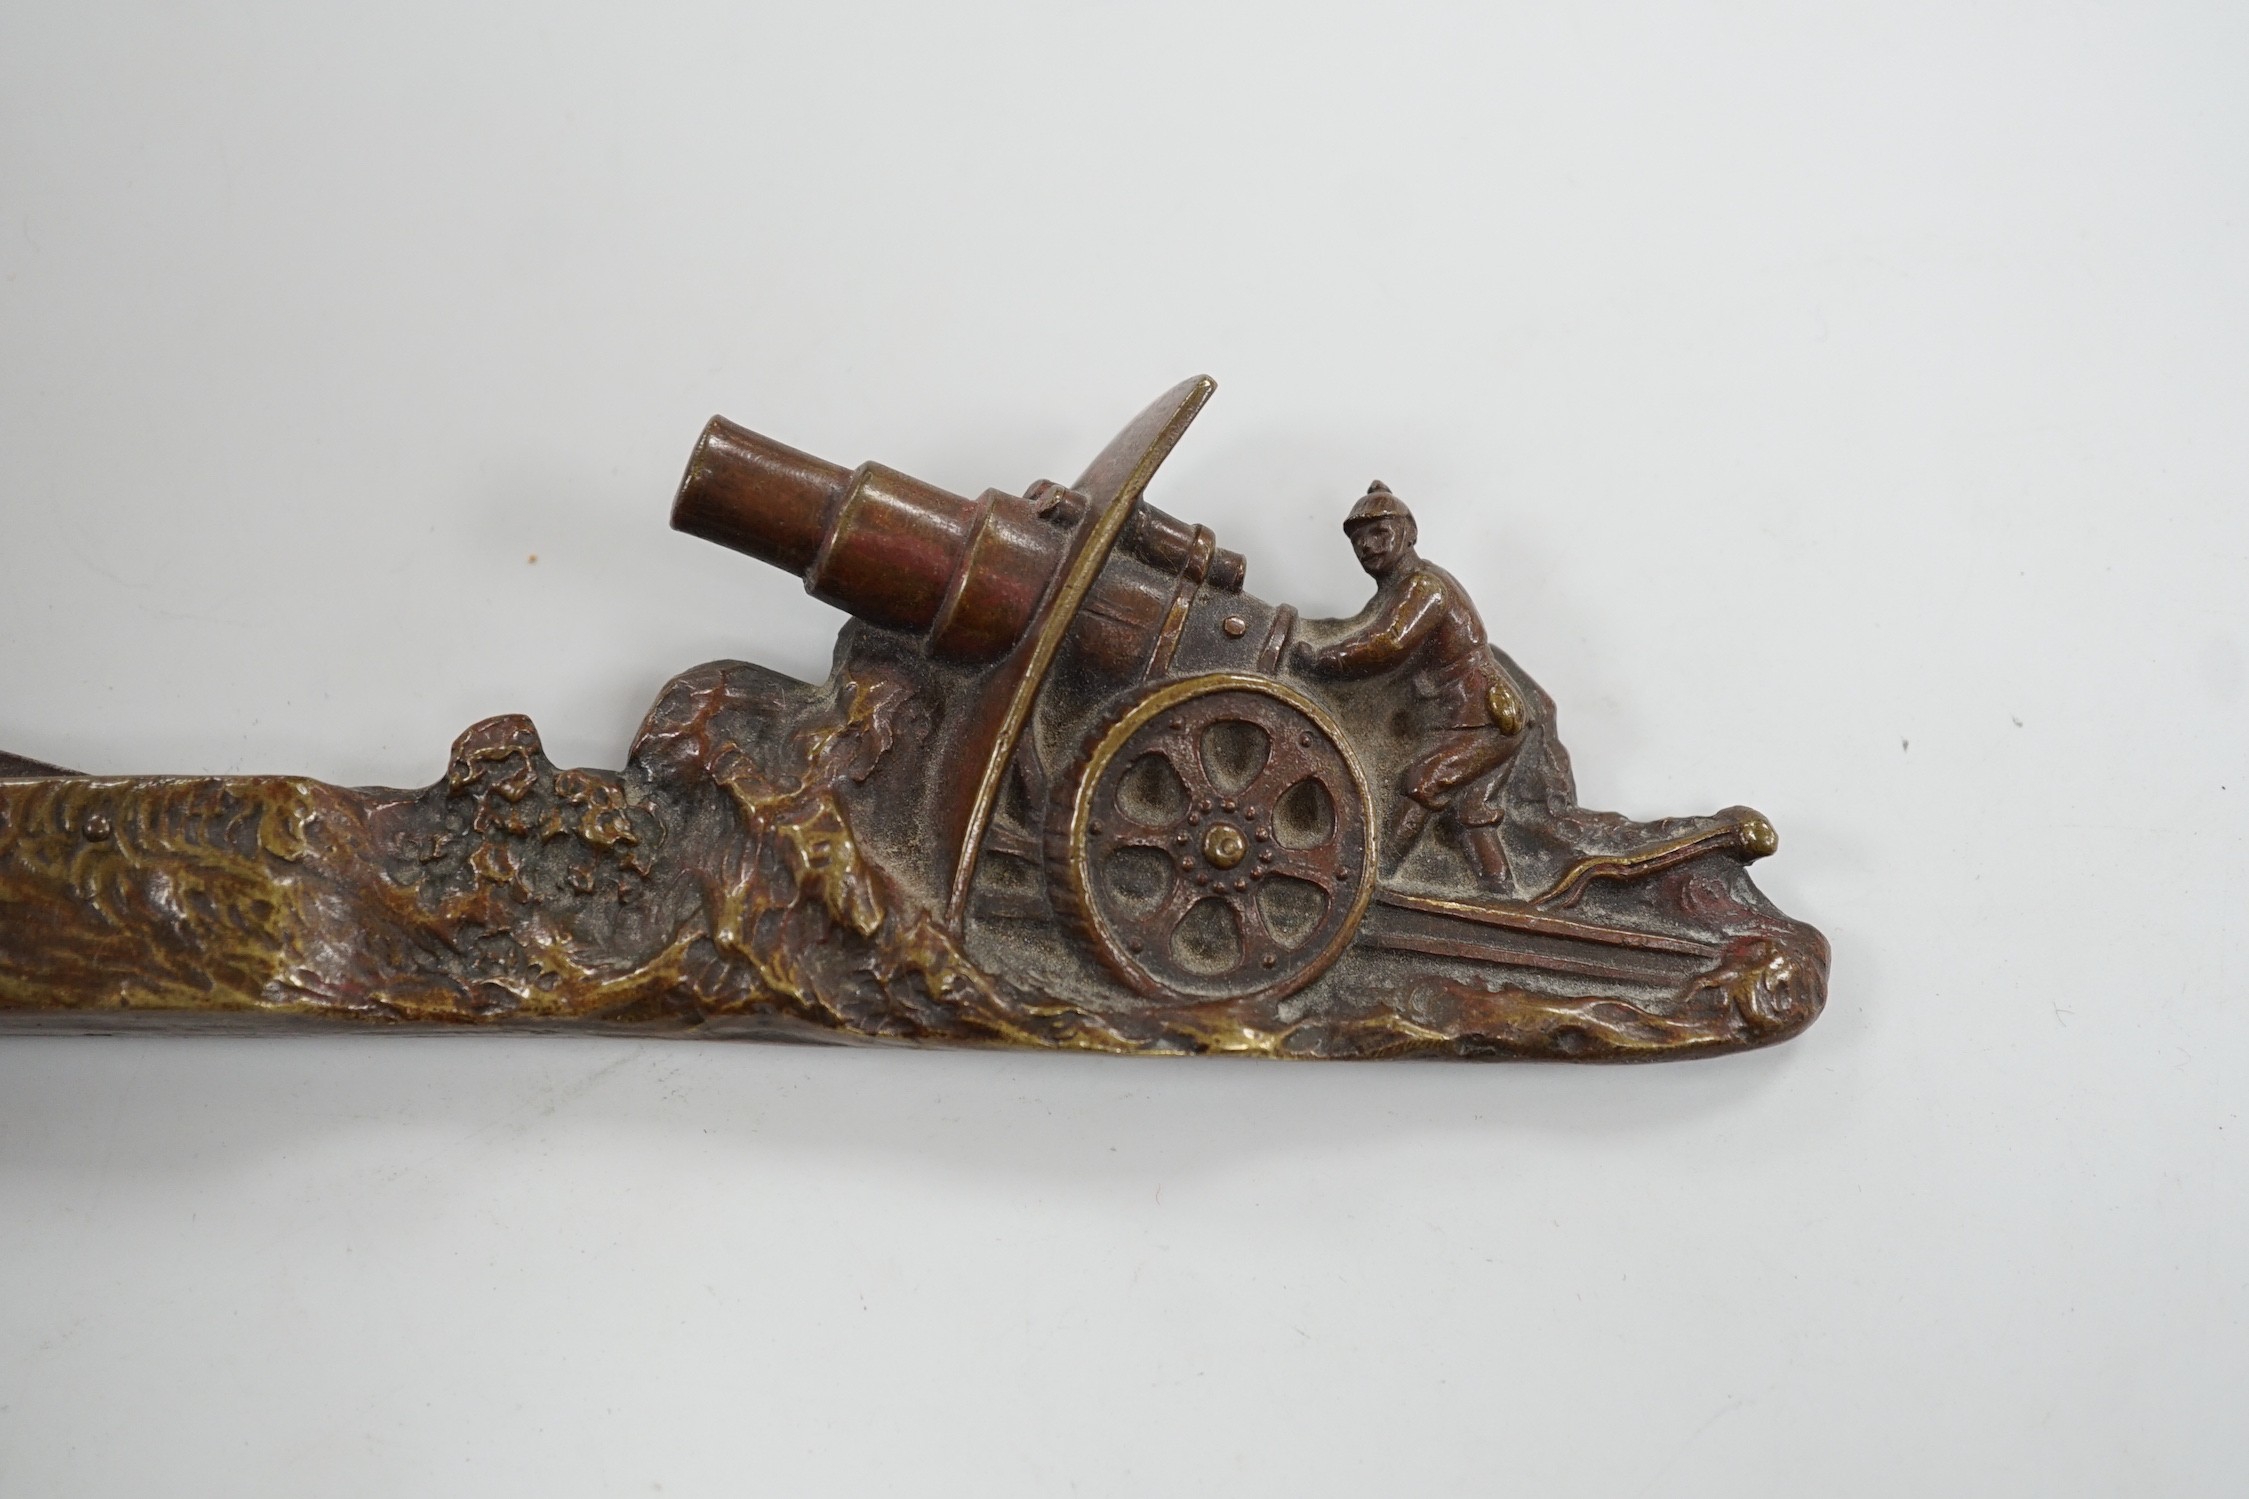 An early 20th century Austrian bronze cigar cutter cast with an artillery cannon 19.5cm long